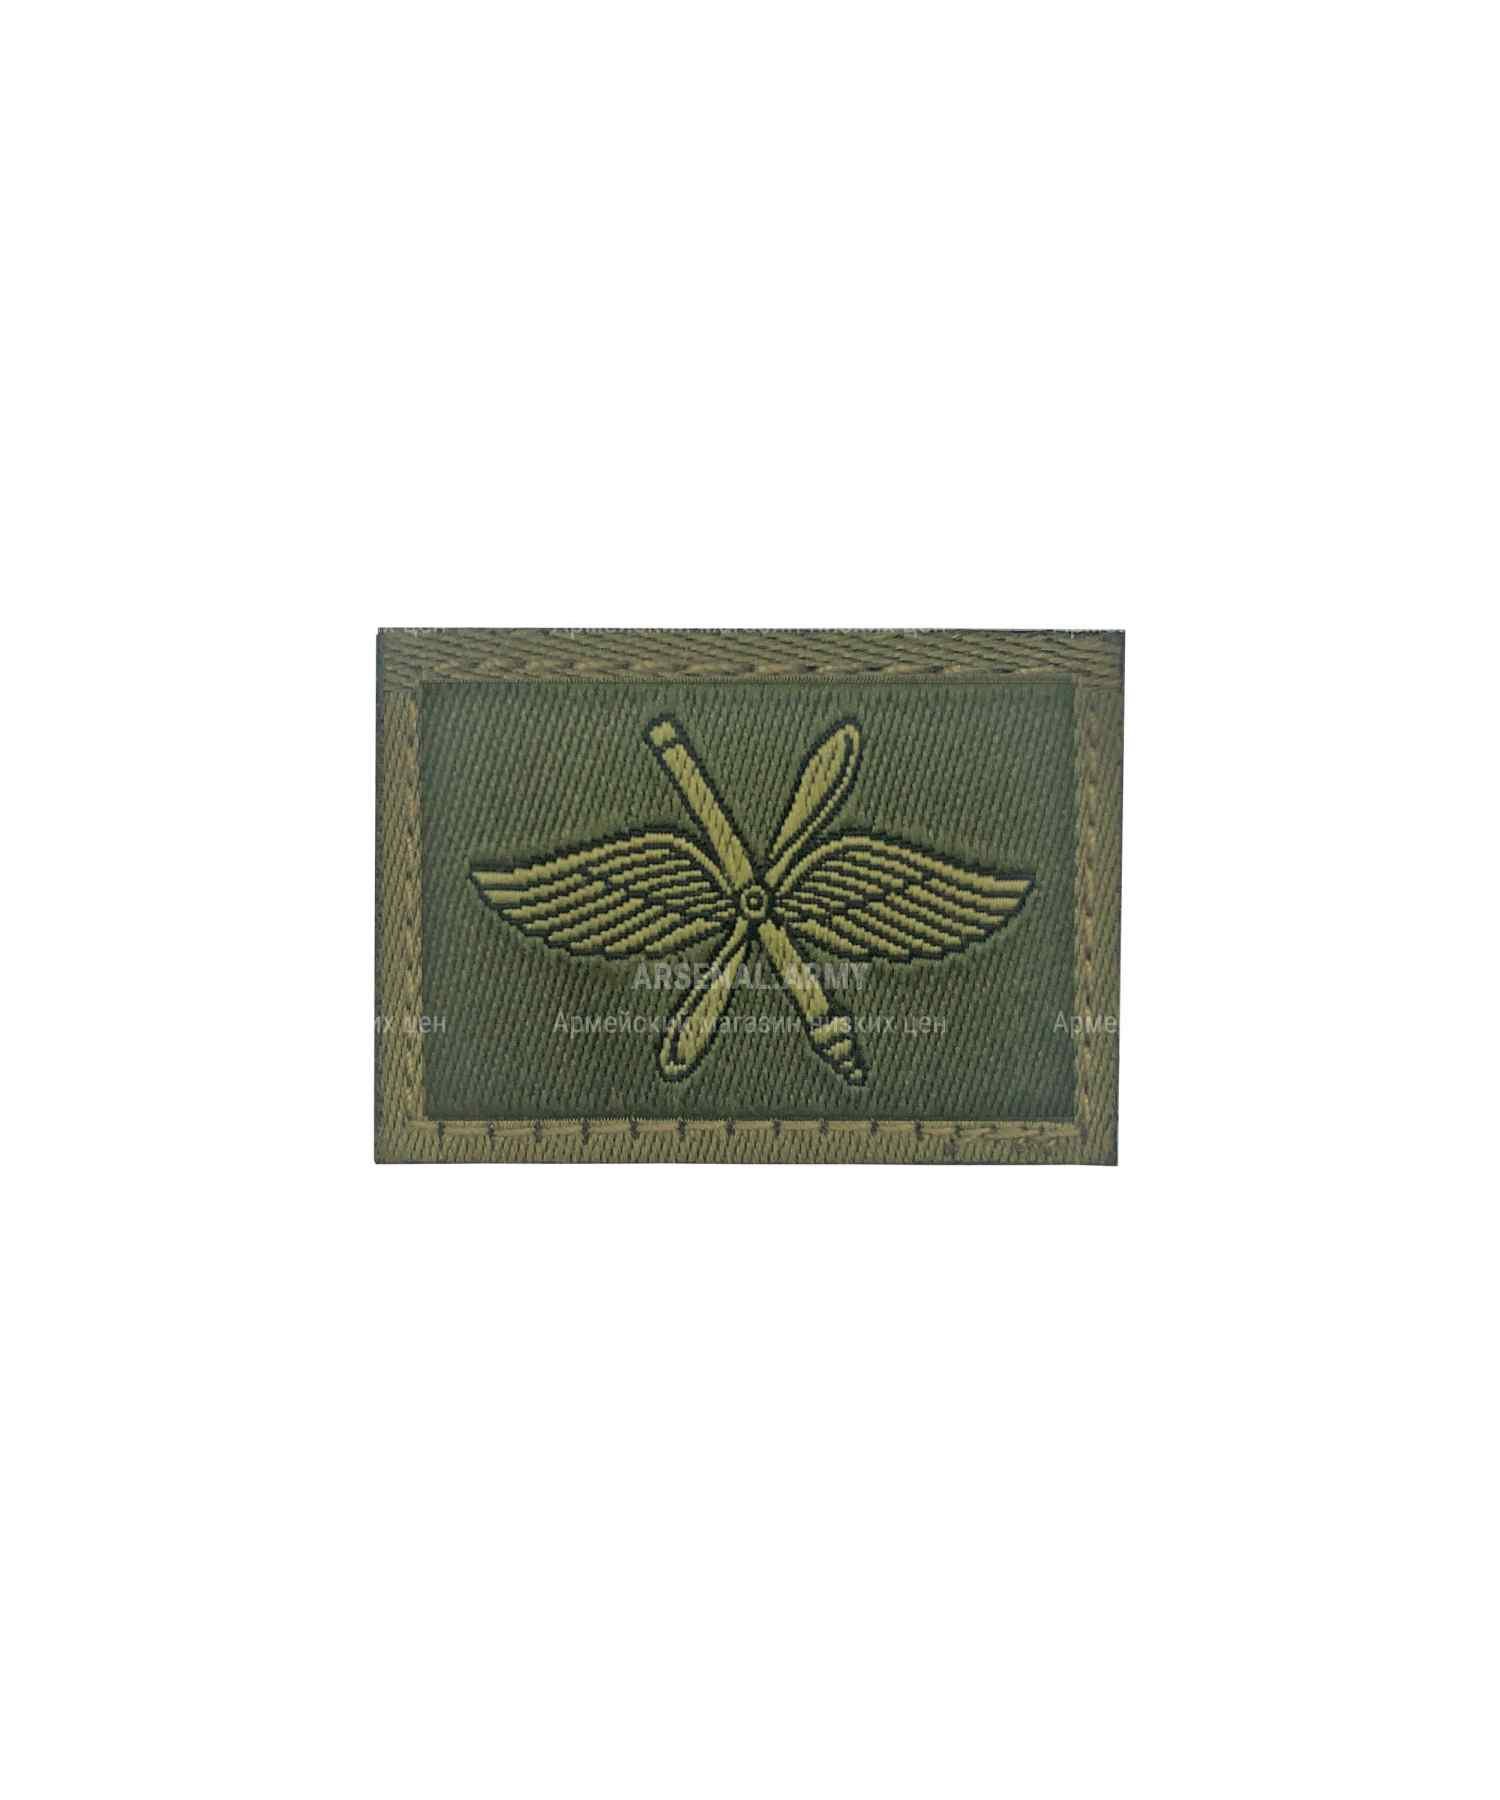 Эмблема ВВС и ПВО на липе зеленая